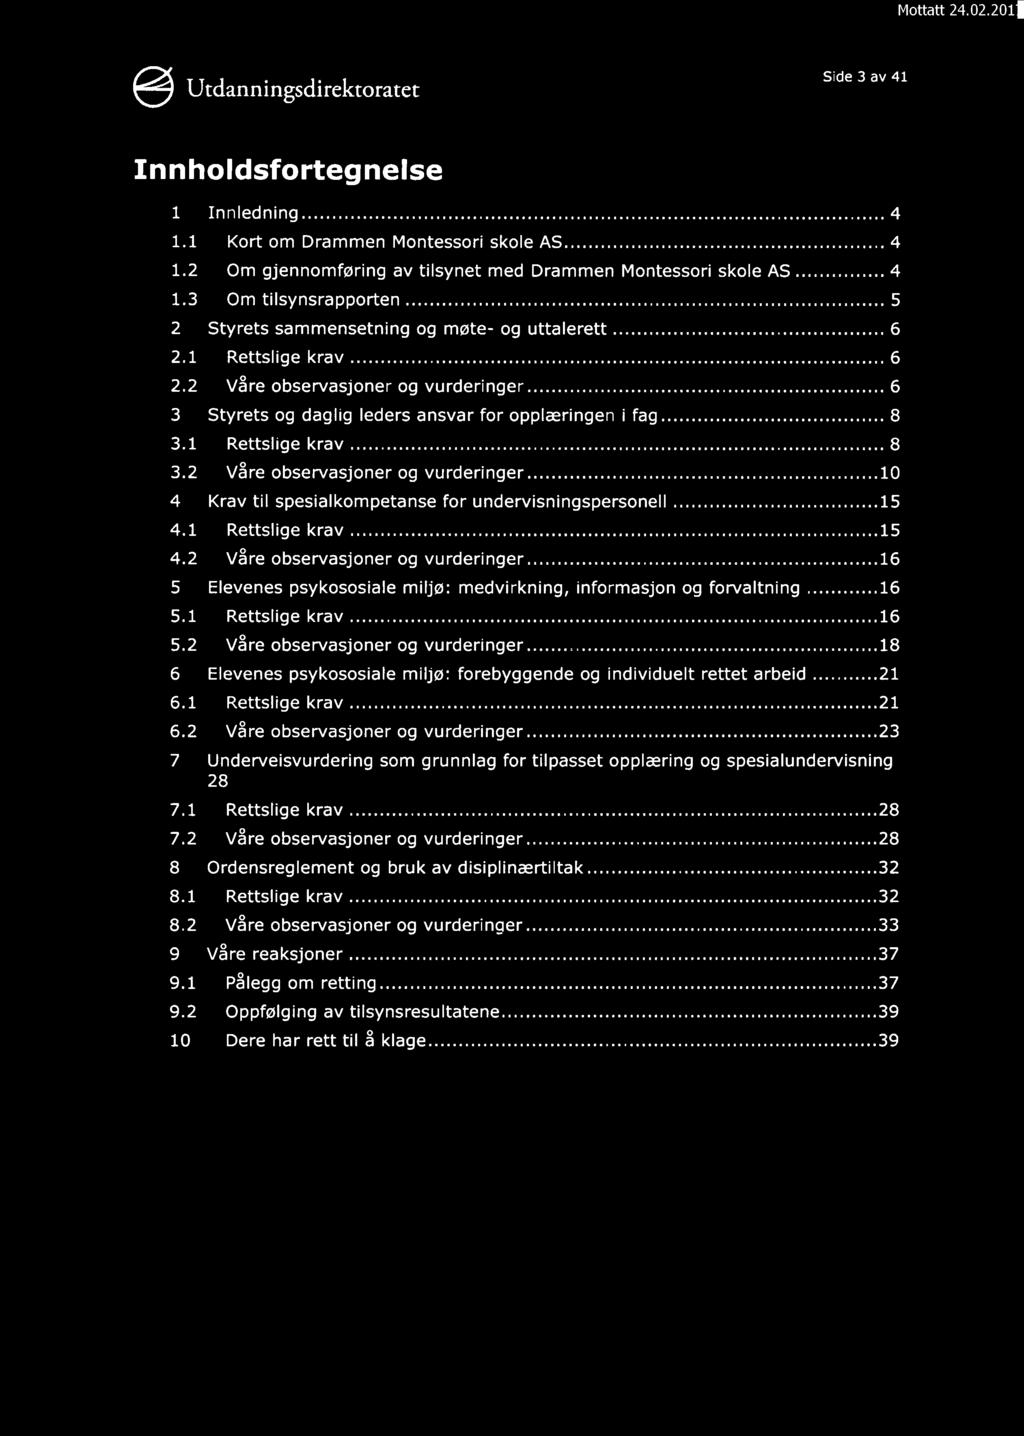 Side 3 av 41 Innholdsfortegnelse 1 Innledning..... 4 1.1 Kort om Drammen Montessori skole AS..... 4 1.2 Om gjennomføring av tilsynet med Drammen Montessori skole AS..... 4 1.3 Om tilsynsrapporten.